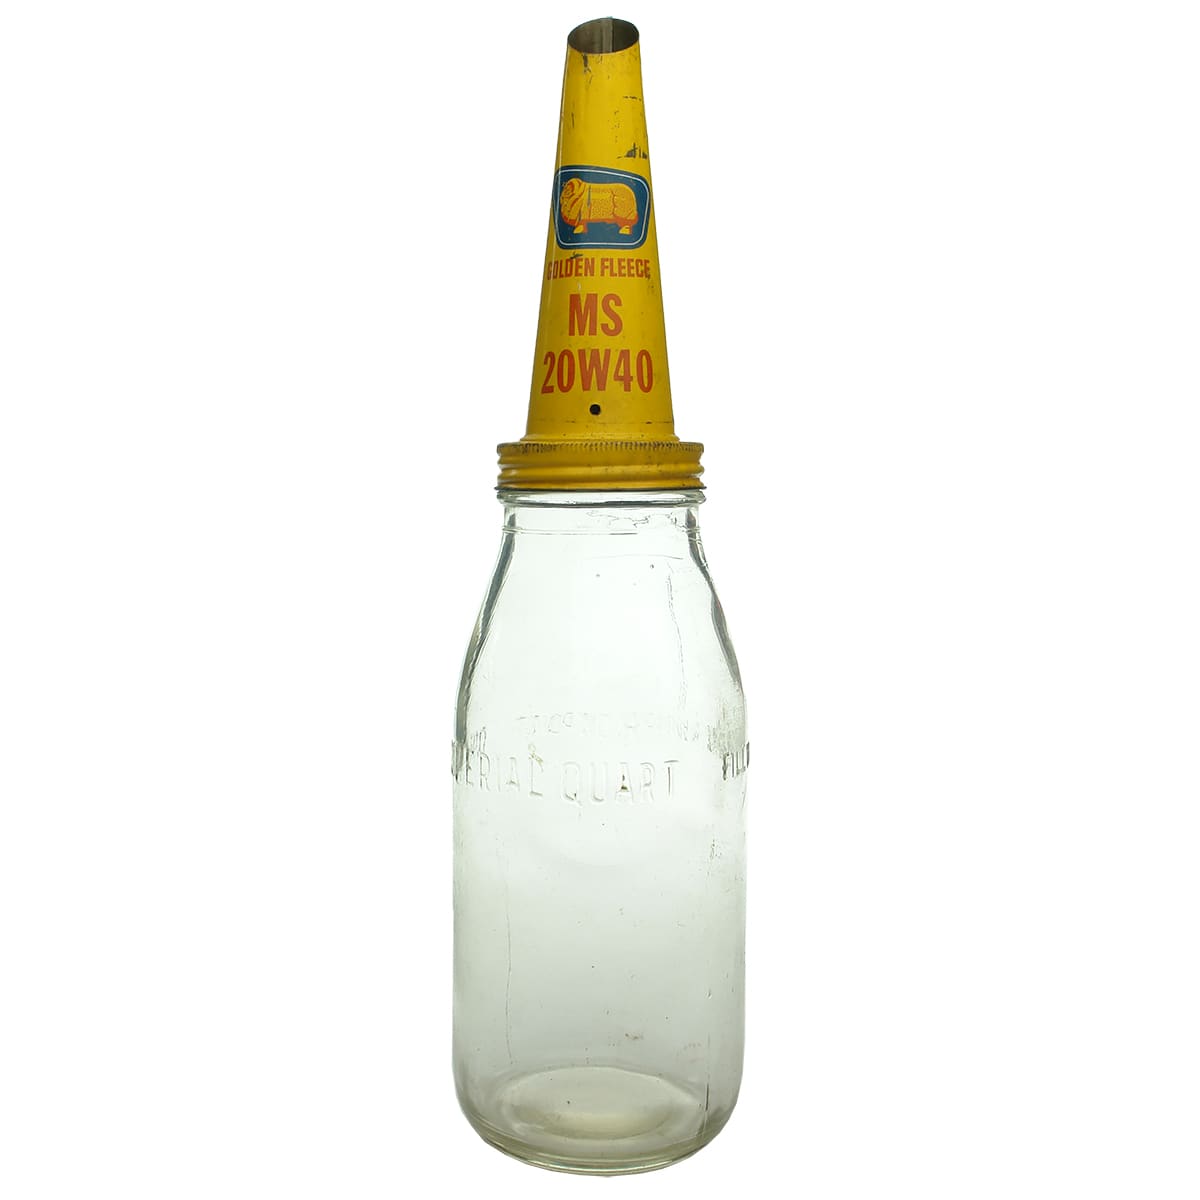 Tin Oil Pourer. Golden Fleece MS 20W40. With plain Quart oil bottle.